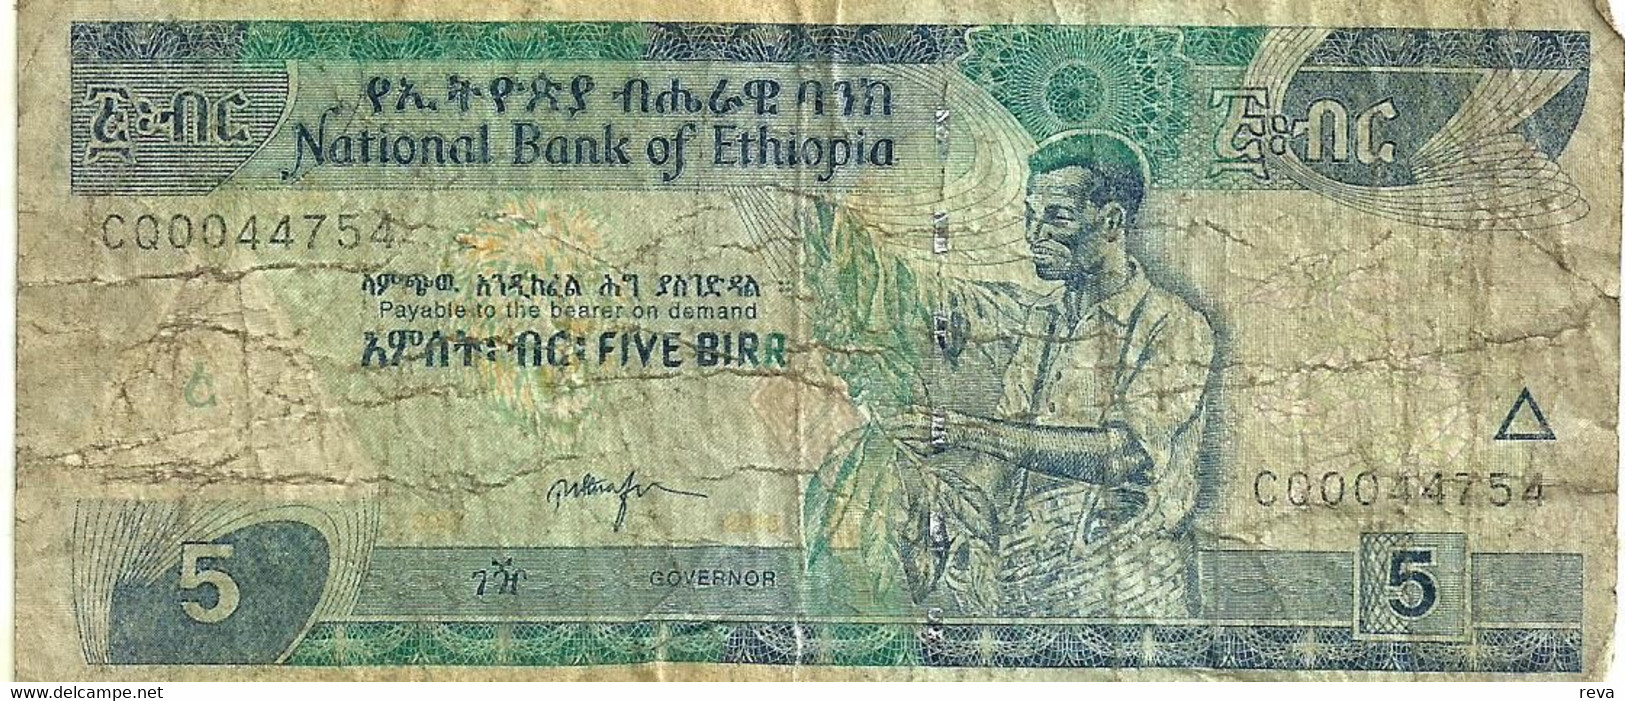 ETHIOPIA 5 BIRR BLUE  MAN FRONT & LANDSCAPE BACK ND(2000)P.47a SIG7. VG READ DESCRIPTION - Aethiopien